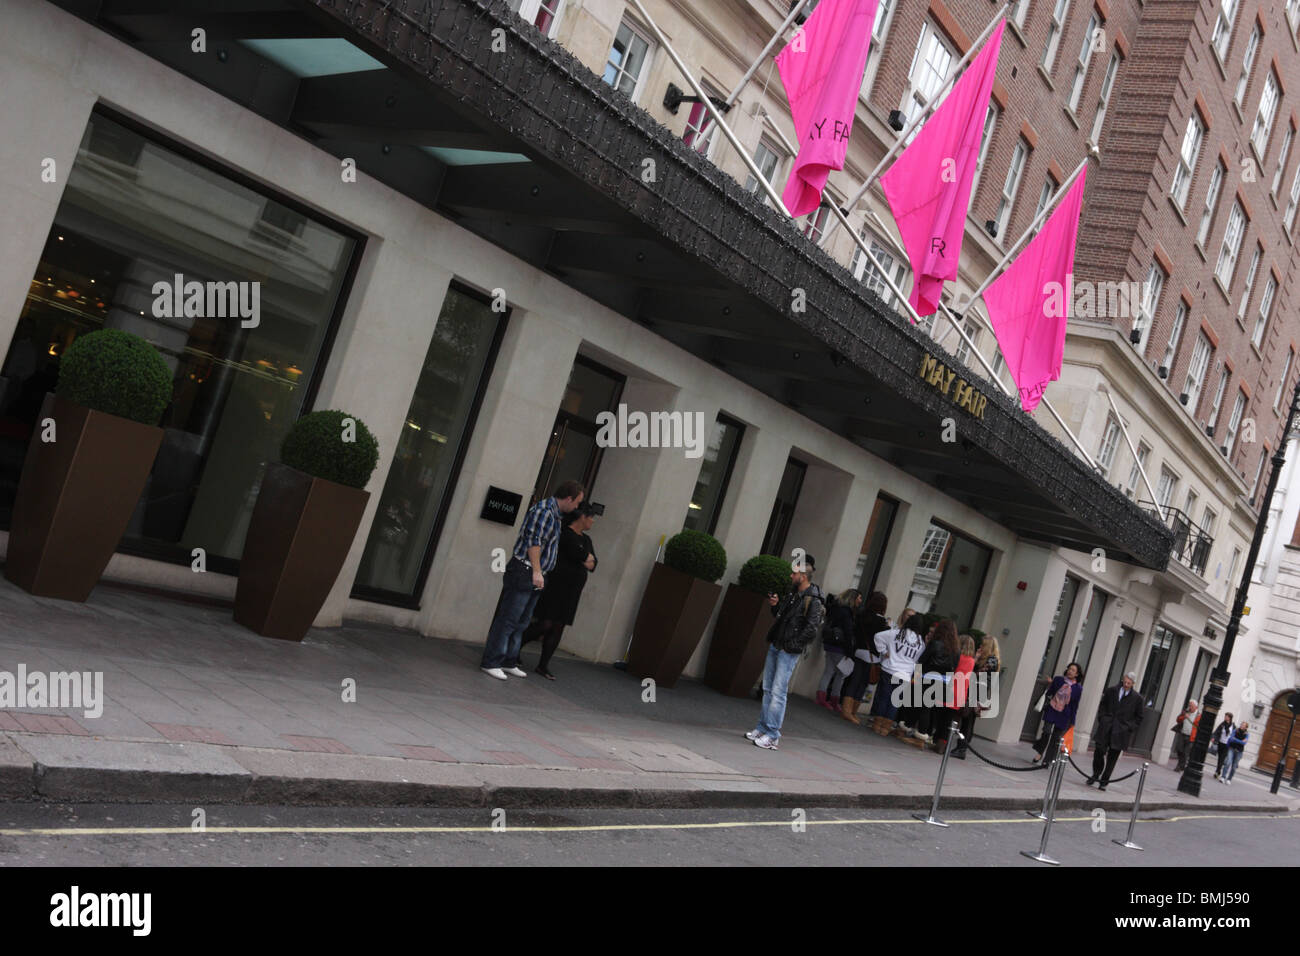 Ligero aspecto angulado al Mayfair Hotel en Stratton Street,cazadores de autógrafos esperar pacientemente fuera de la entrada principal. Foto de stock